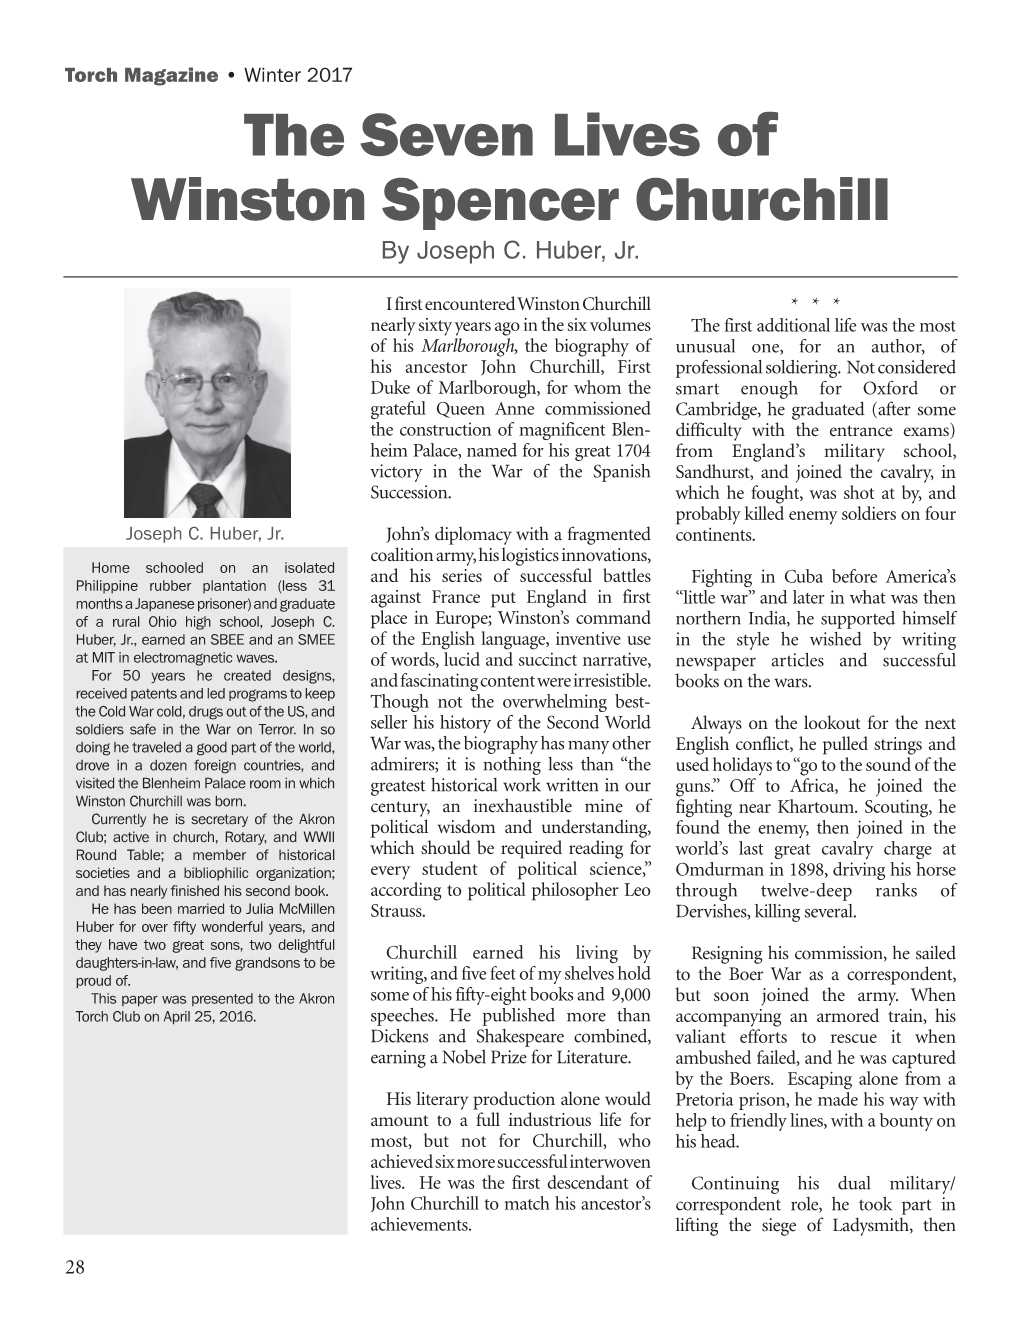 The Seven Lives of Winston Spencer Churchill by Joseph C